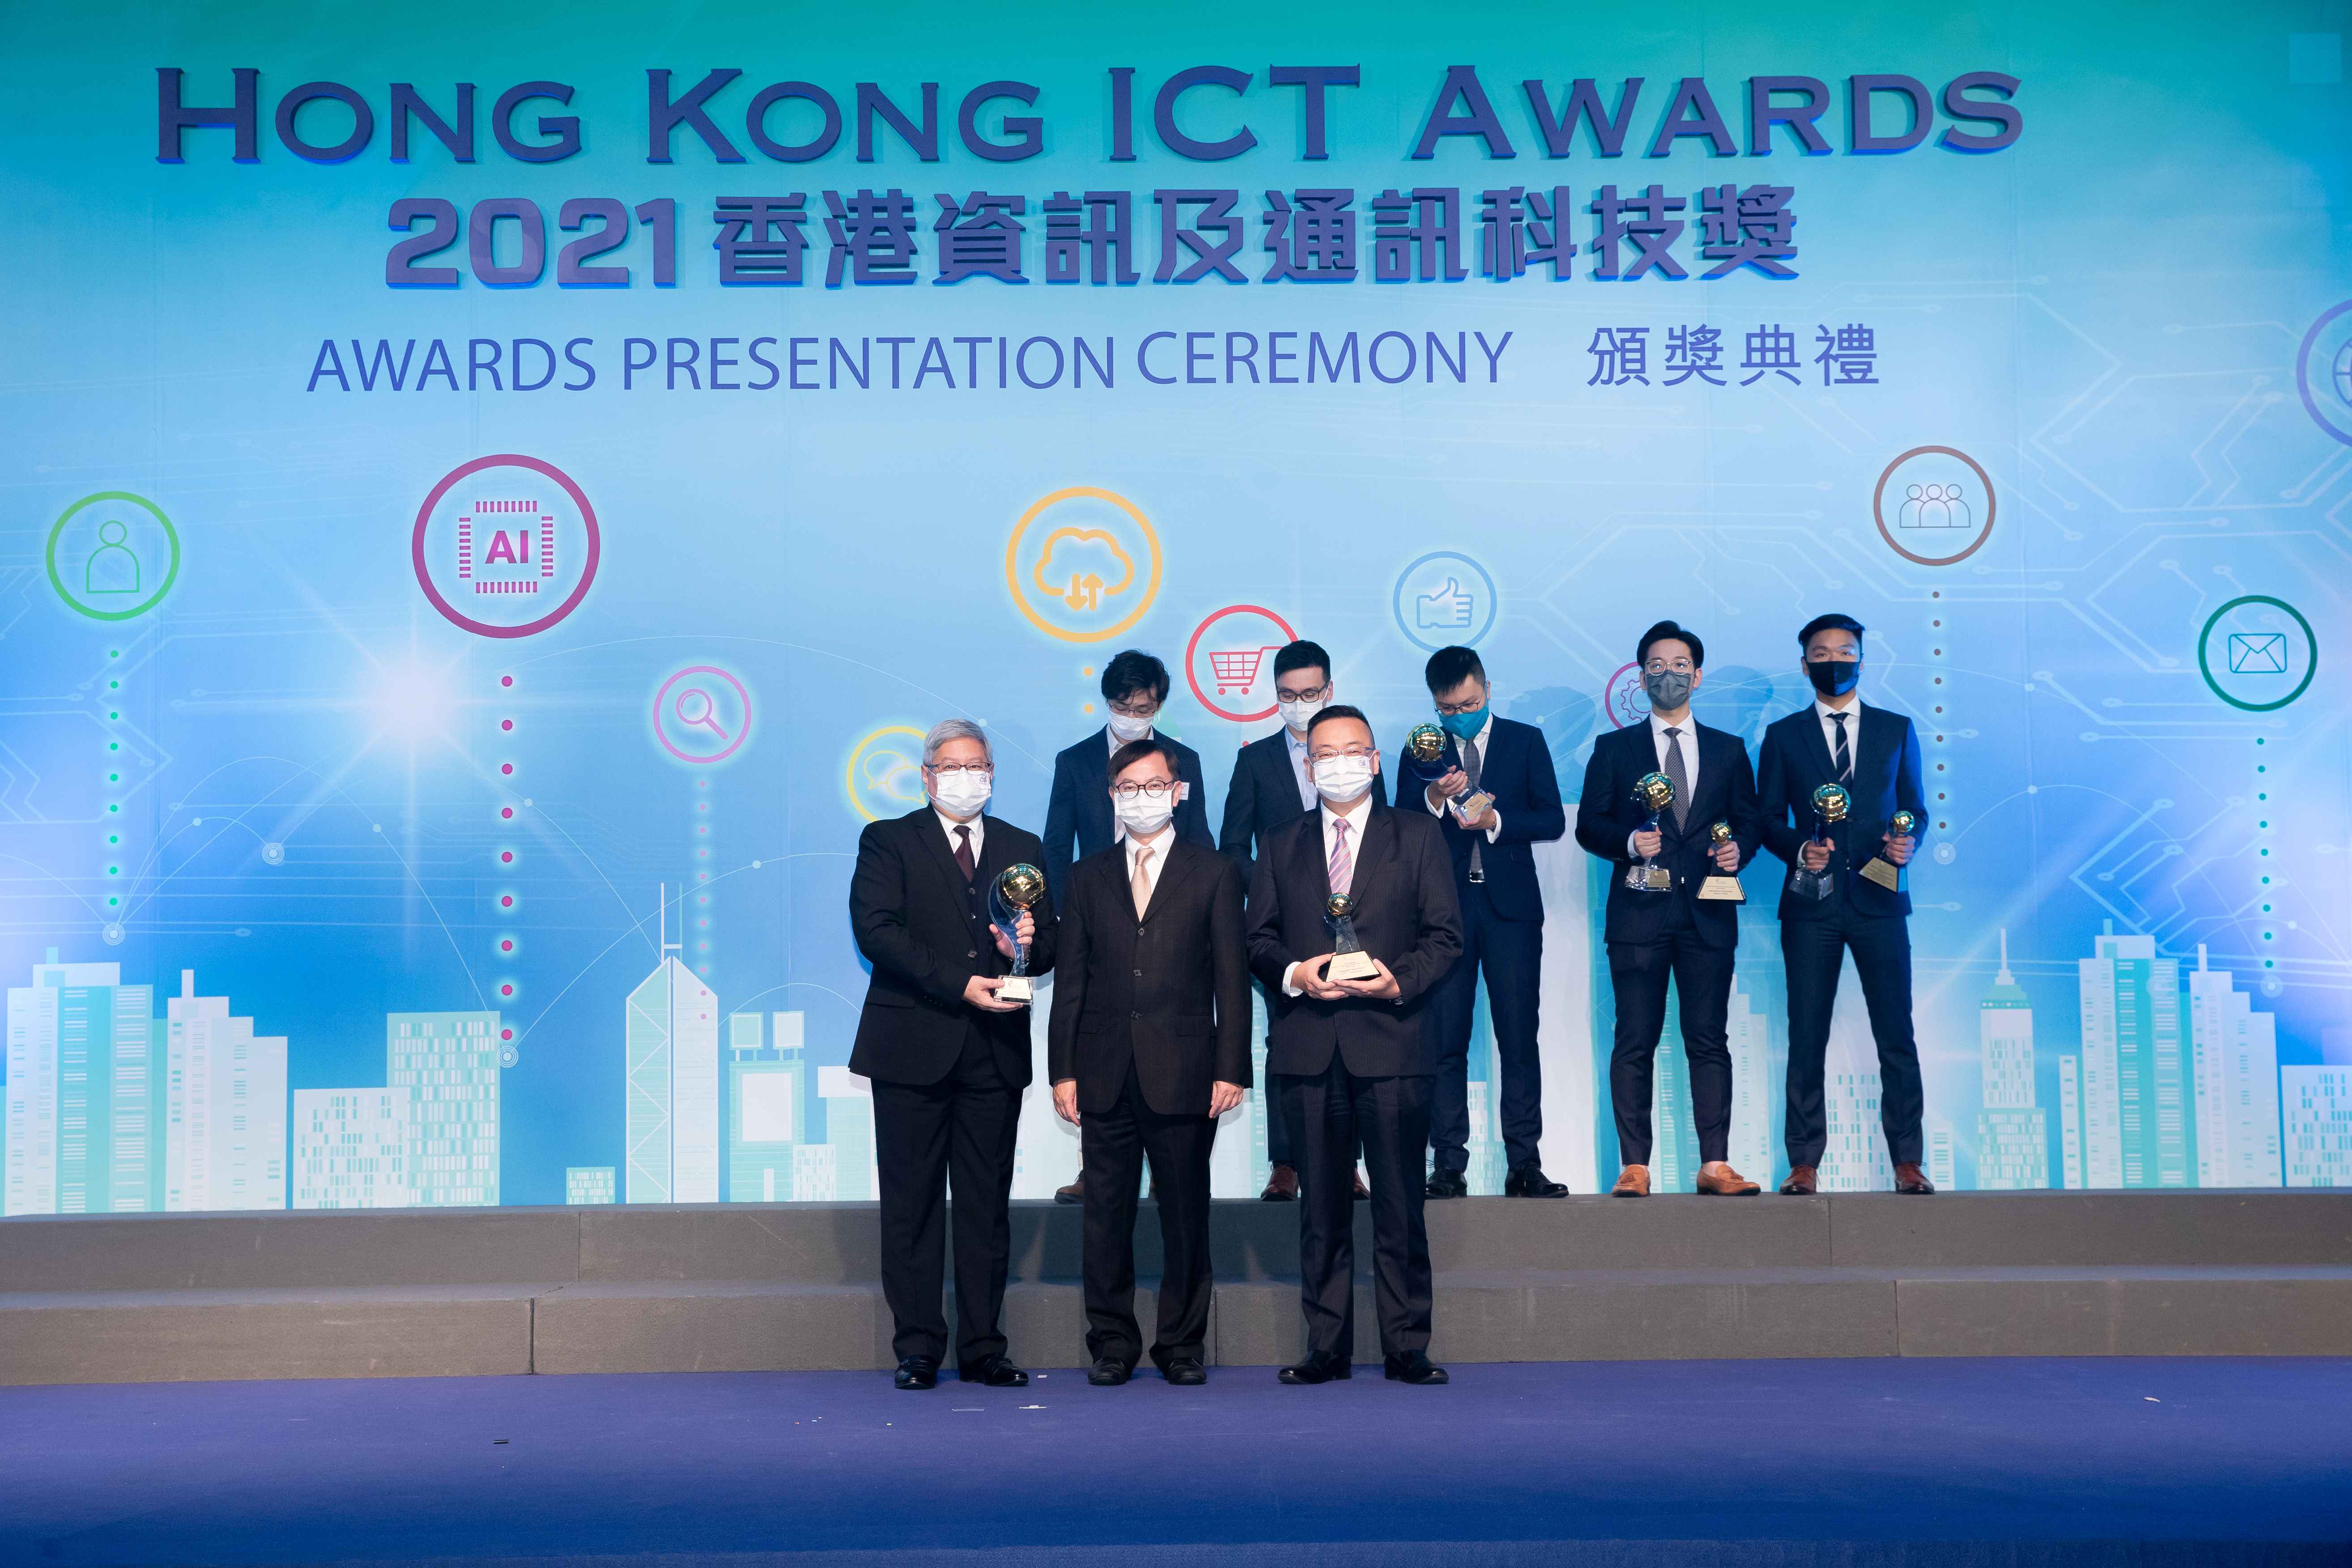 Hong Kong ICT Awards 2021 Smart Business Grand Award Winner